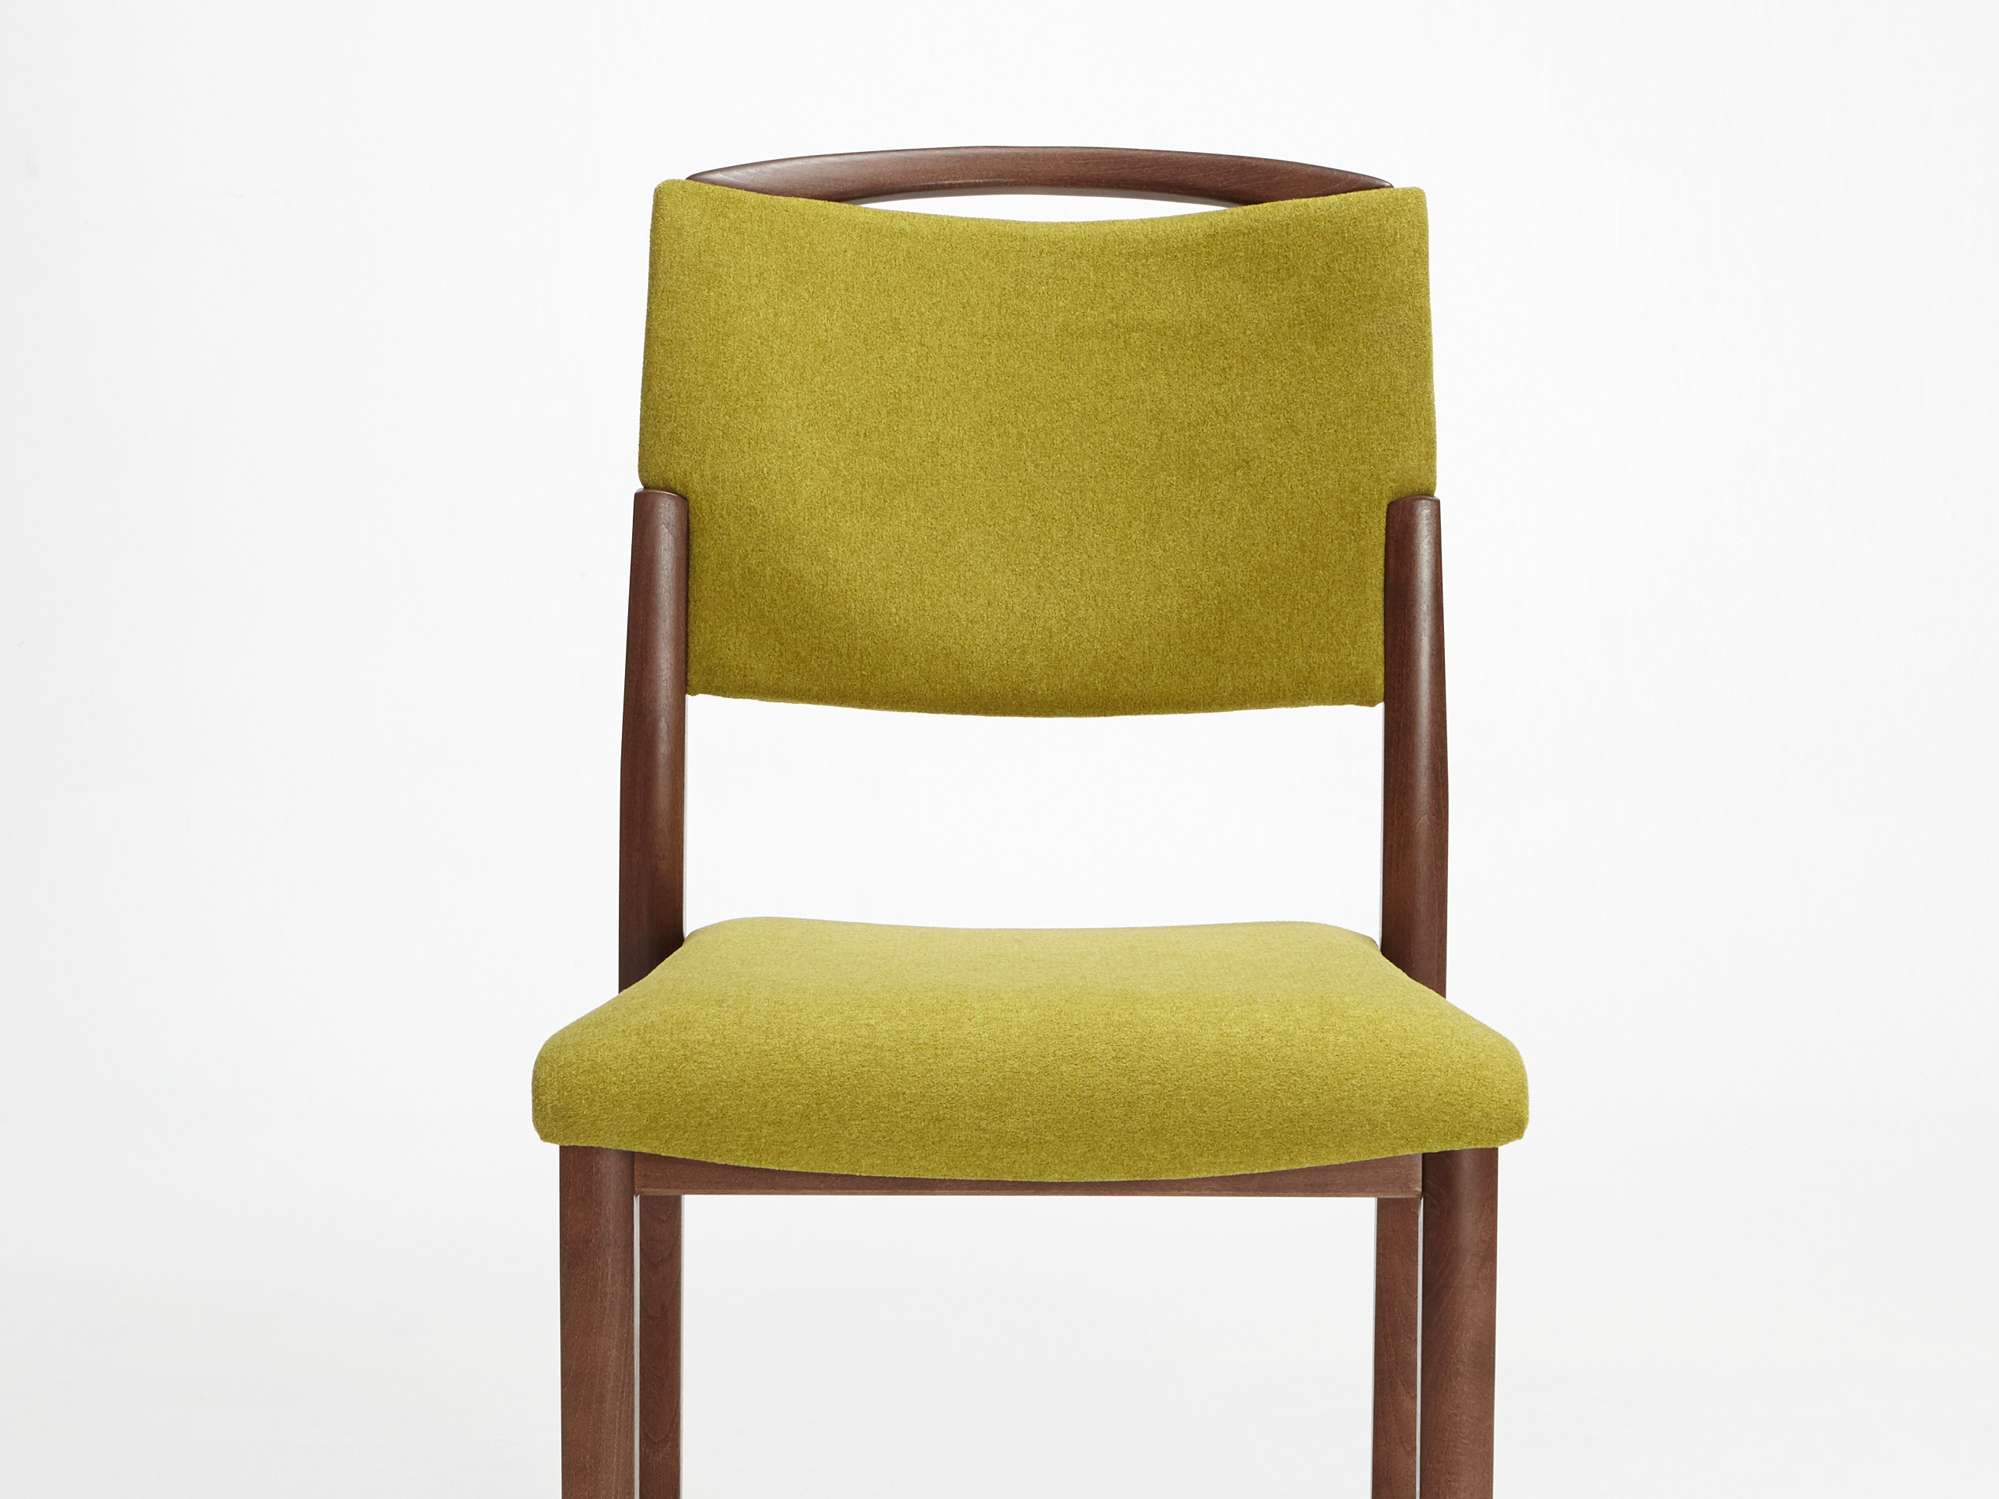 Model Fena jako krzesło sztaplowane, z uchwytem i bez podłokietników